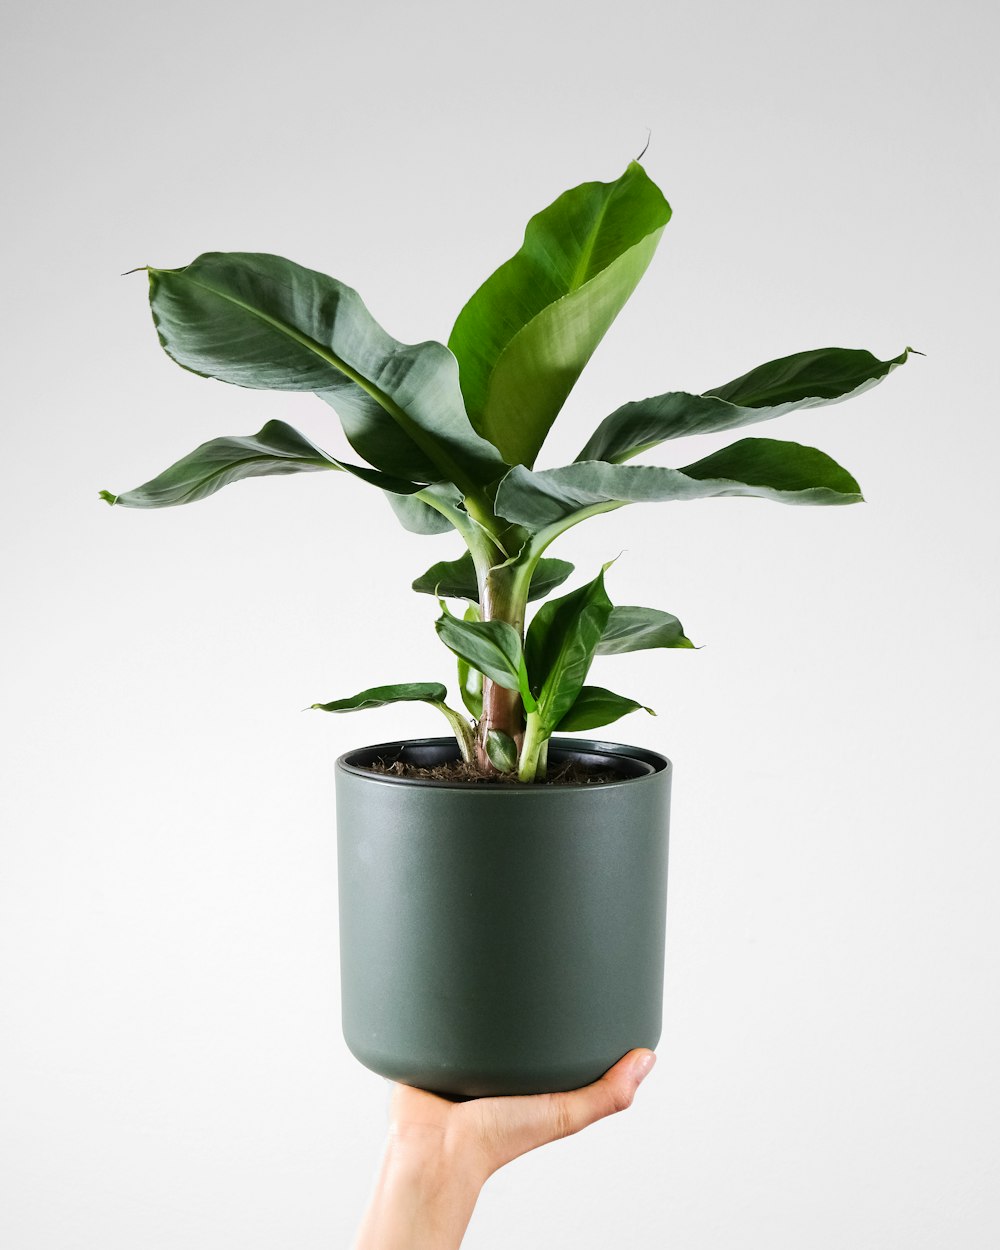 una mano che tiene una pianta in vaso con foglie verdi